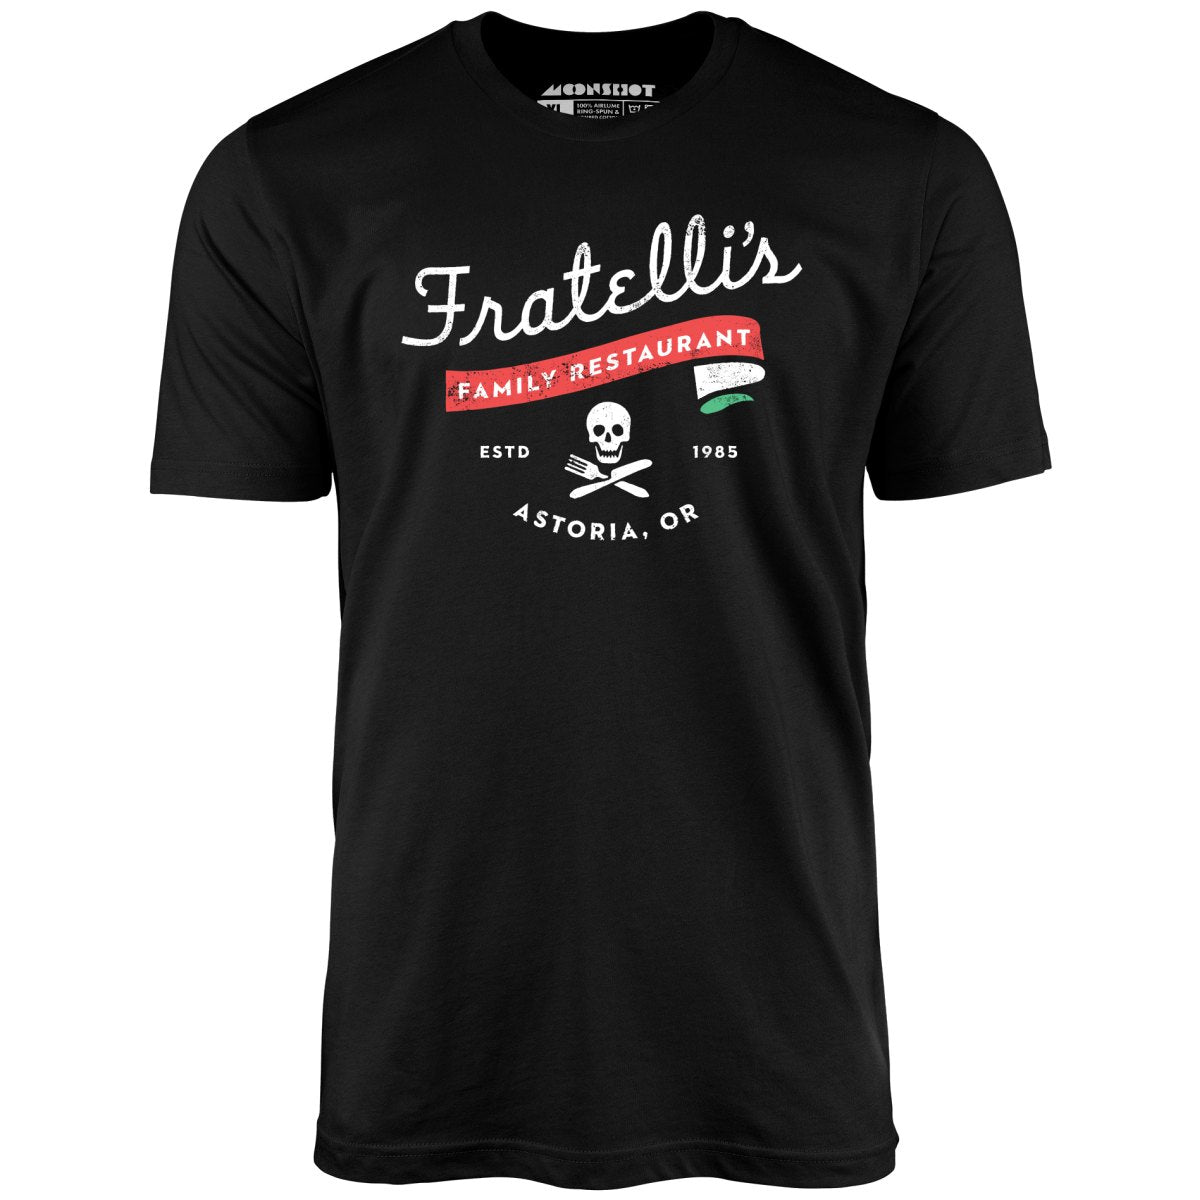 Fratelli's Family Restaurant - Unisex T-Shirt